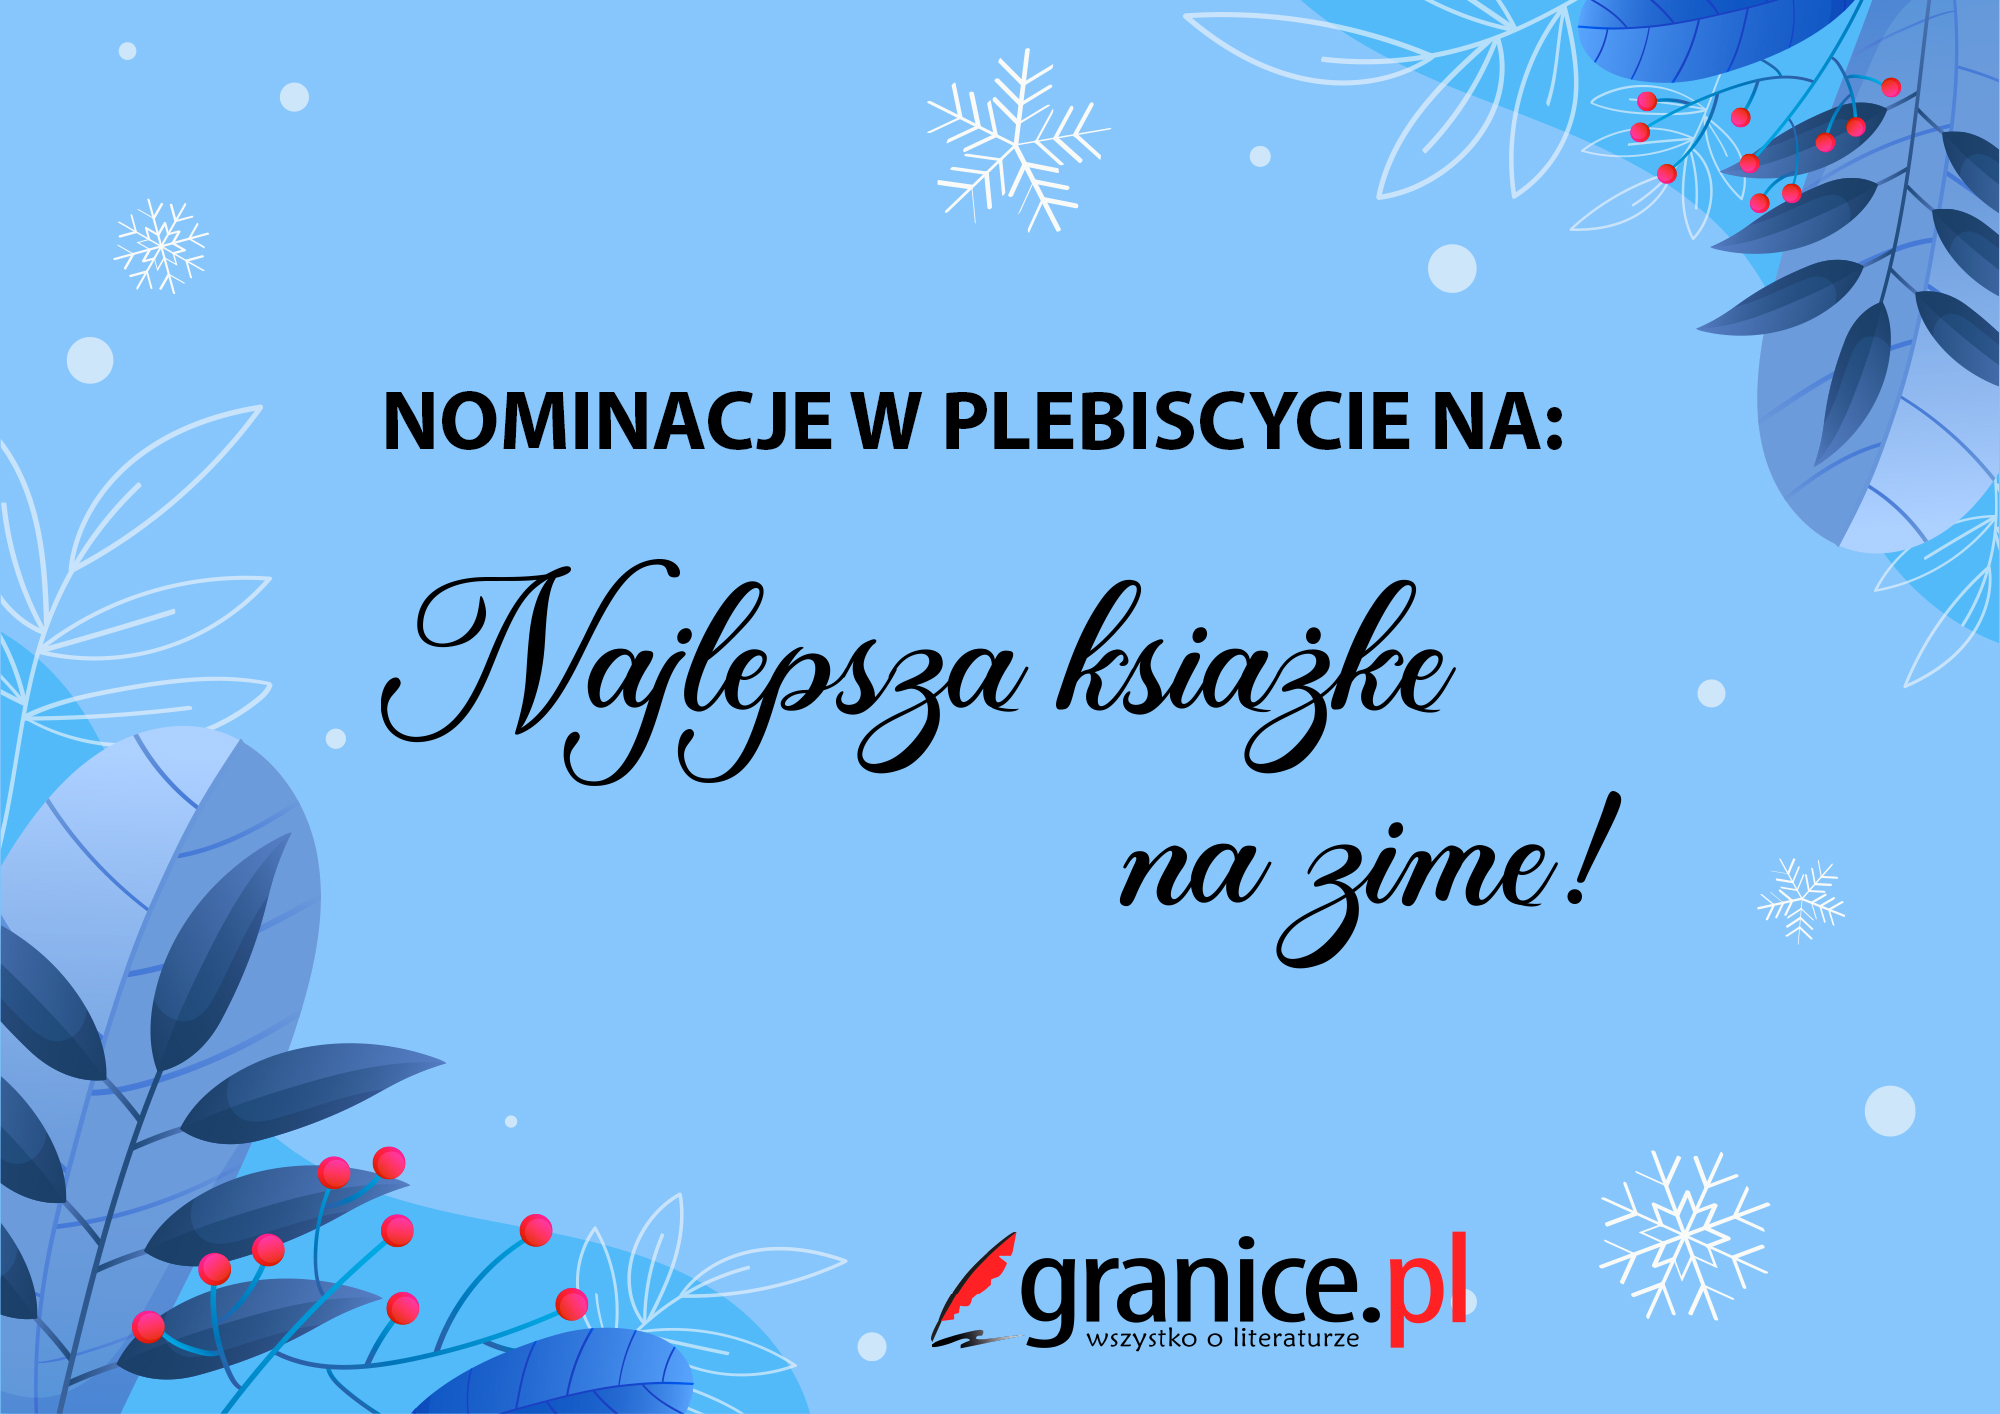 Nominacje w plebiscycie serwisu granice.pl